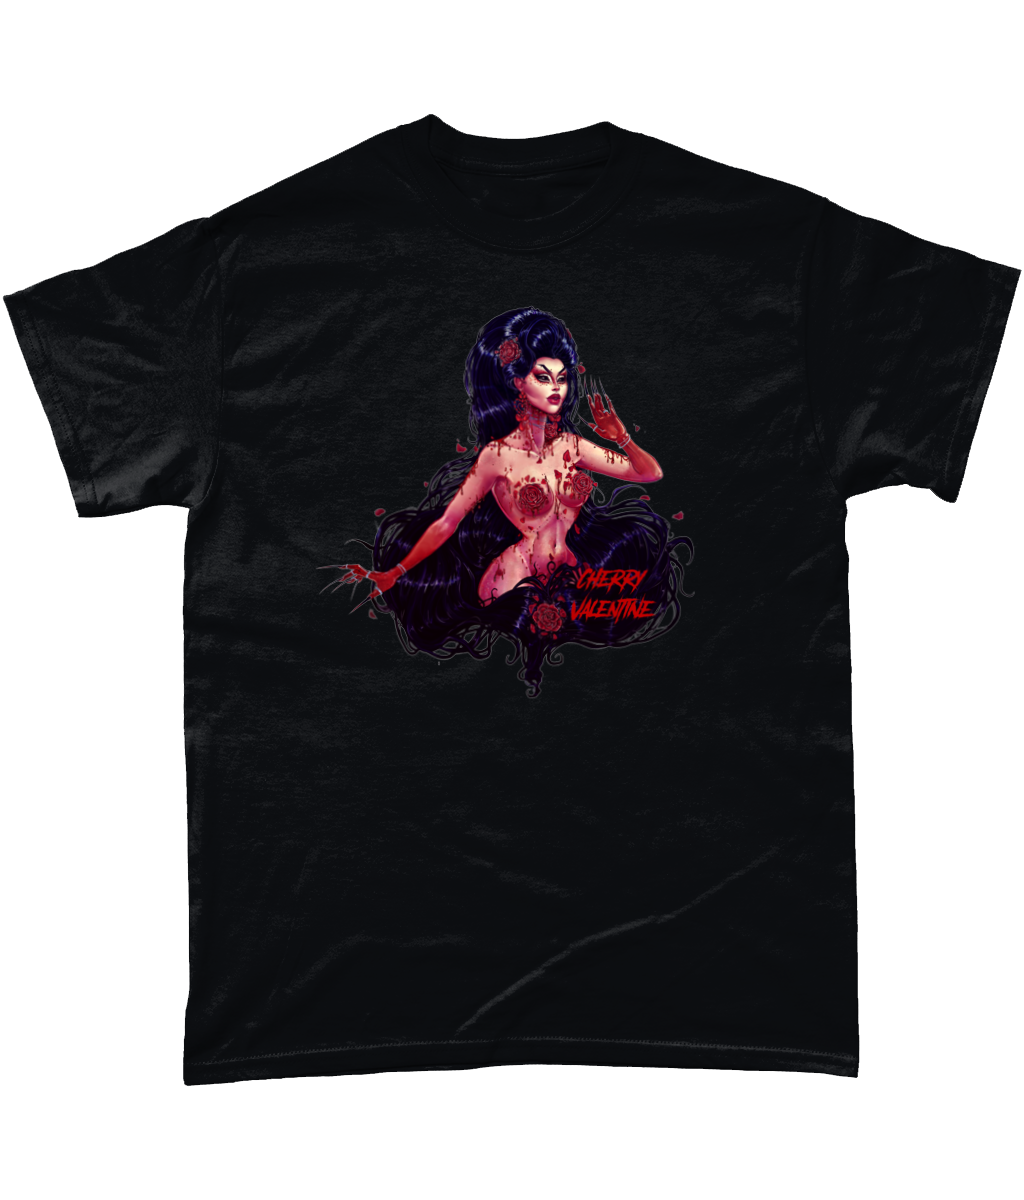 Cherry Valentine - Bloody Valentine T-Shirt